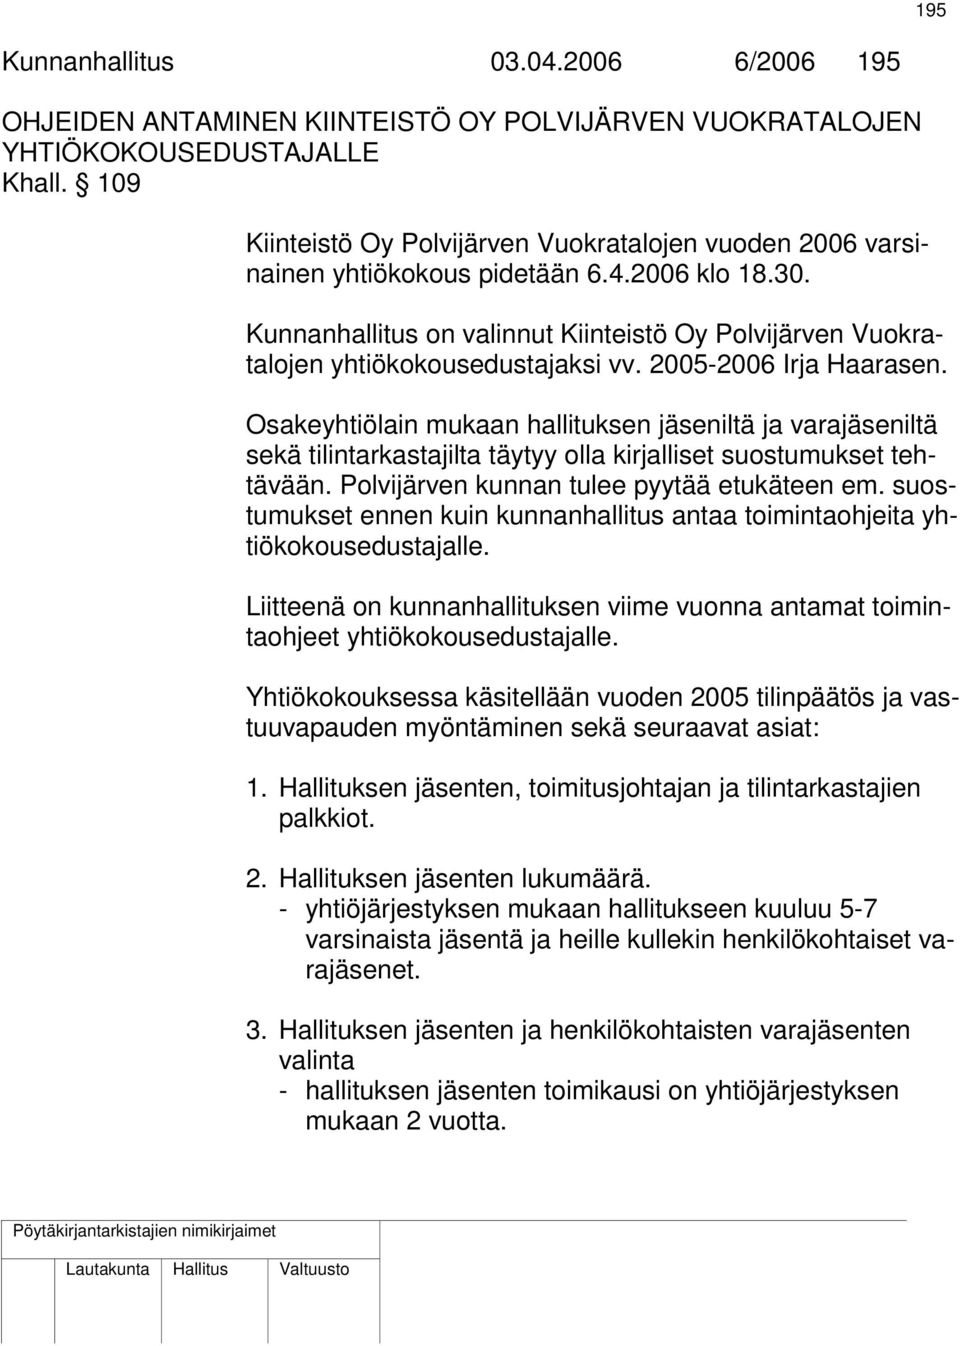 Kunnanhallitus on valinnut Kiinteistö Oy Polvijärven Vuokratalojen yhtiökokousedustajaksi vv. 2005-2006 Irja Haarasen.